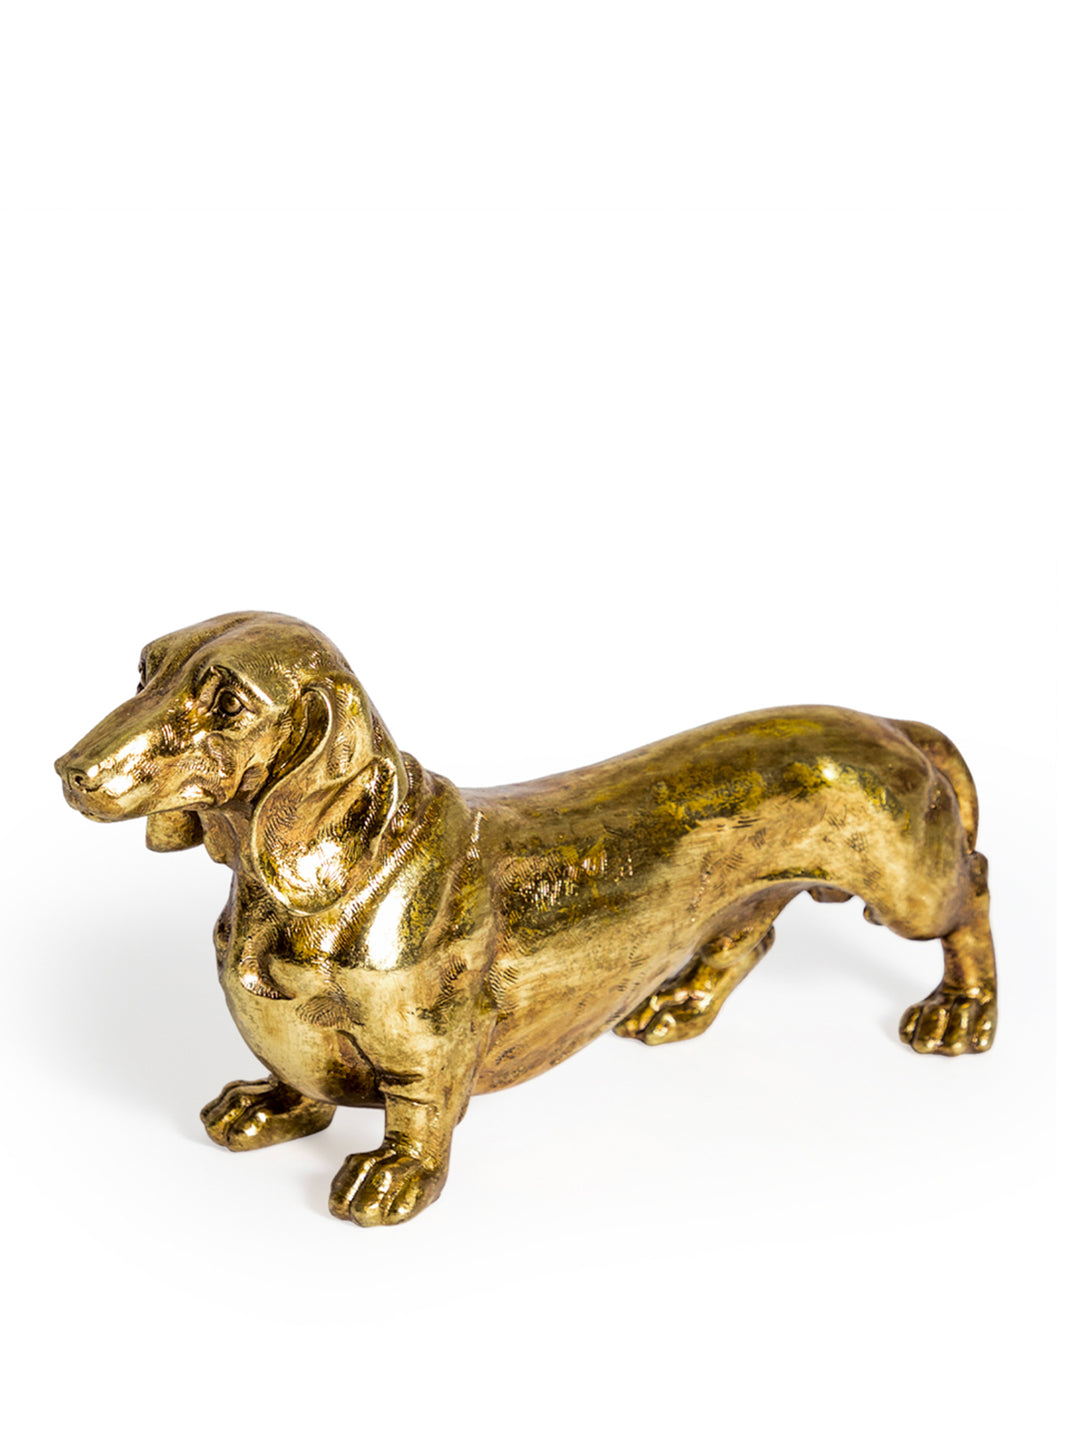 Antique gold dachshund, Sausage dog figure 